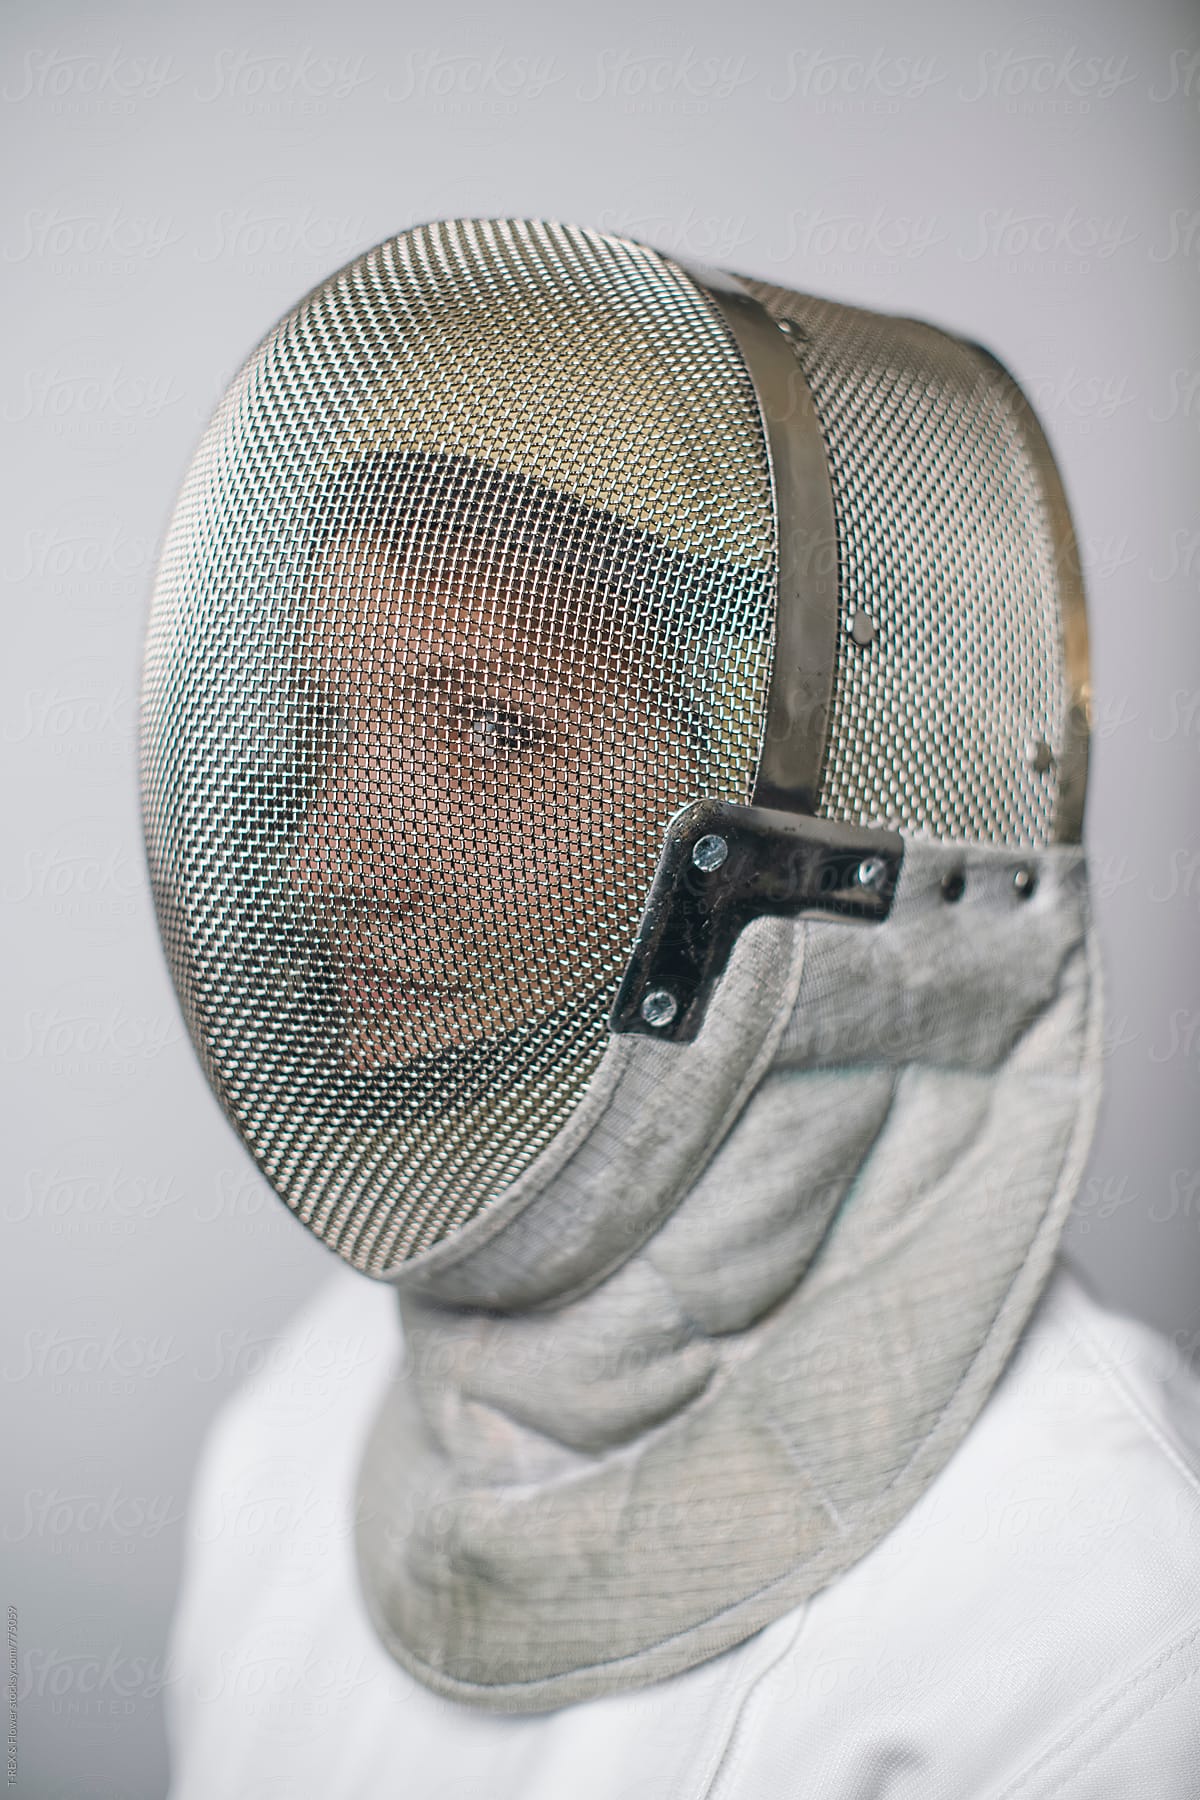 Female fencer wearing mask